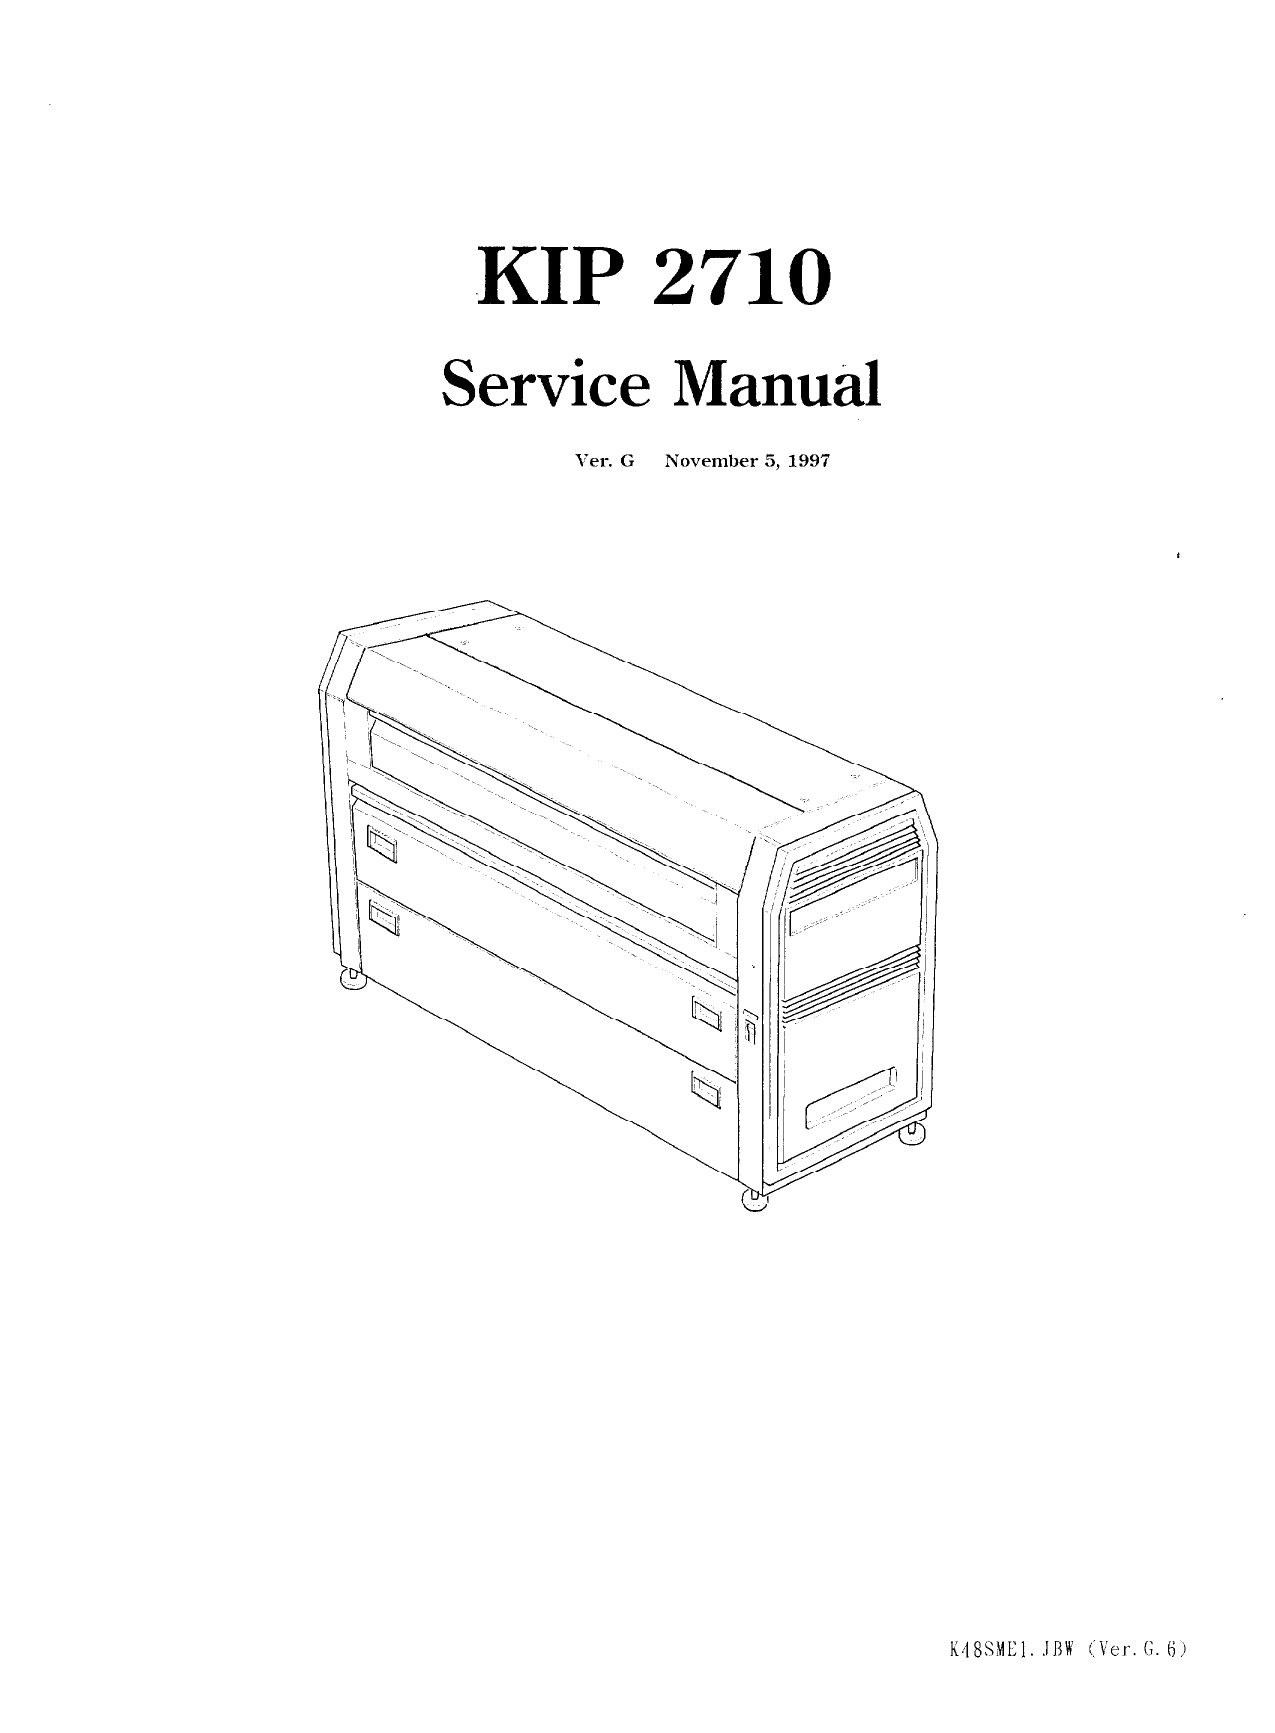 KIP 2710 K-48 Parts and Service Manual-1